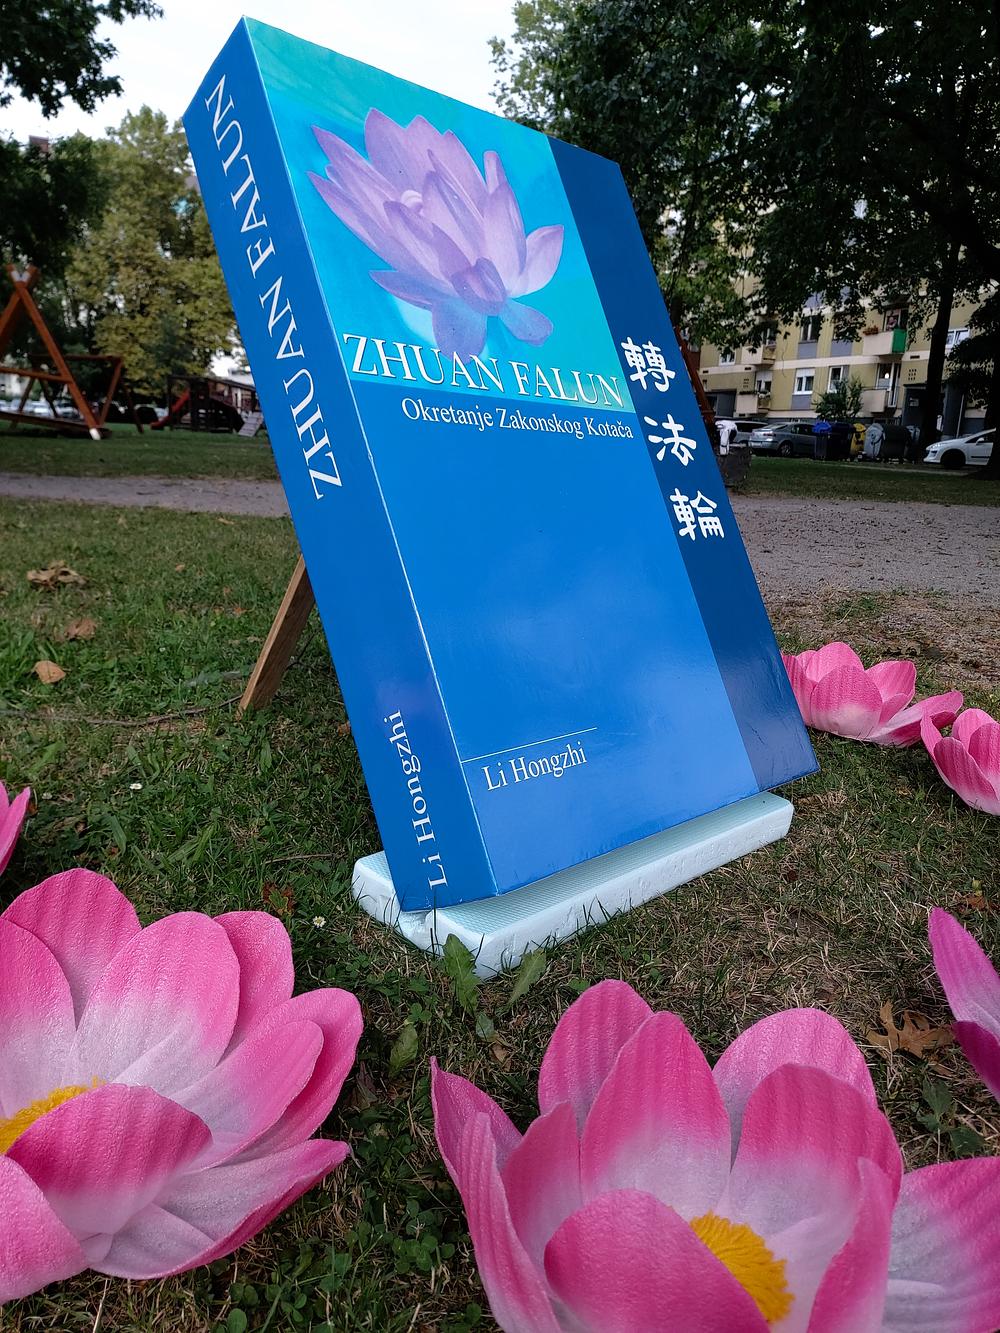 Model hrvatskog izdanja knjige Zhuan Falun 